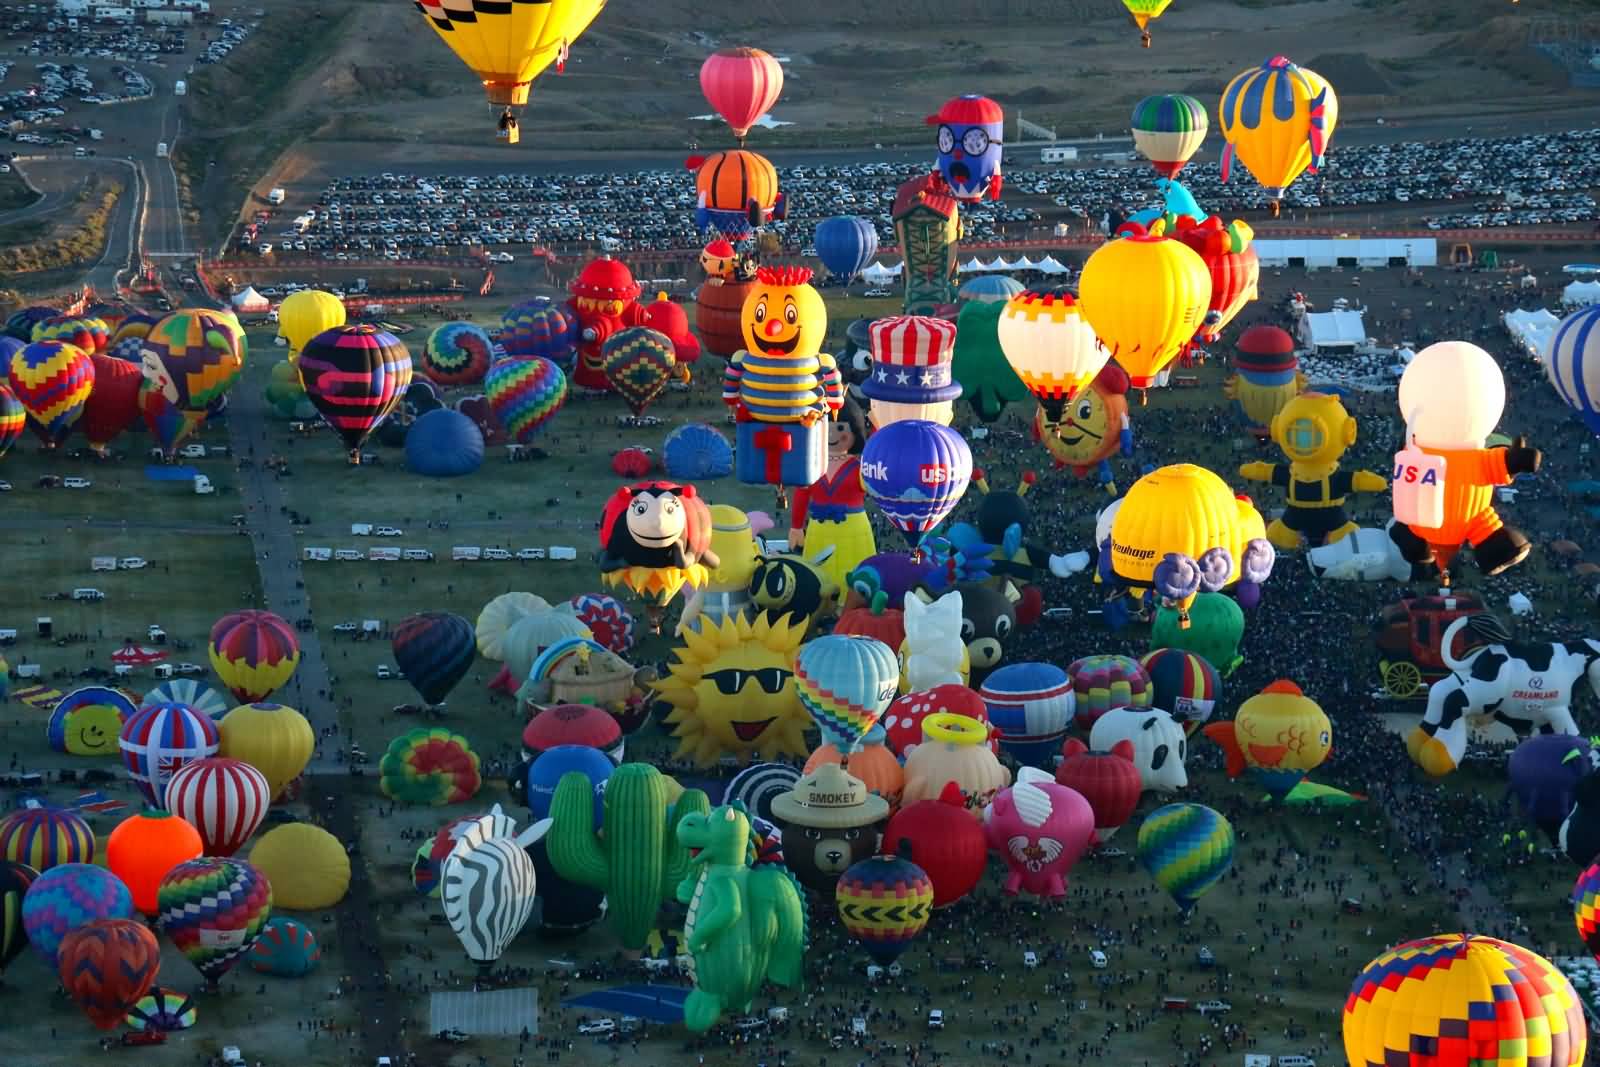 Aerial View Of The Balloons At Albuquerque Balloon Festival